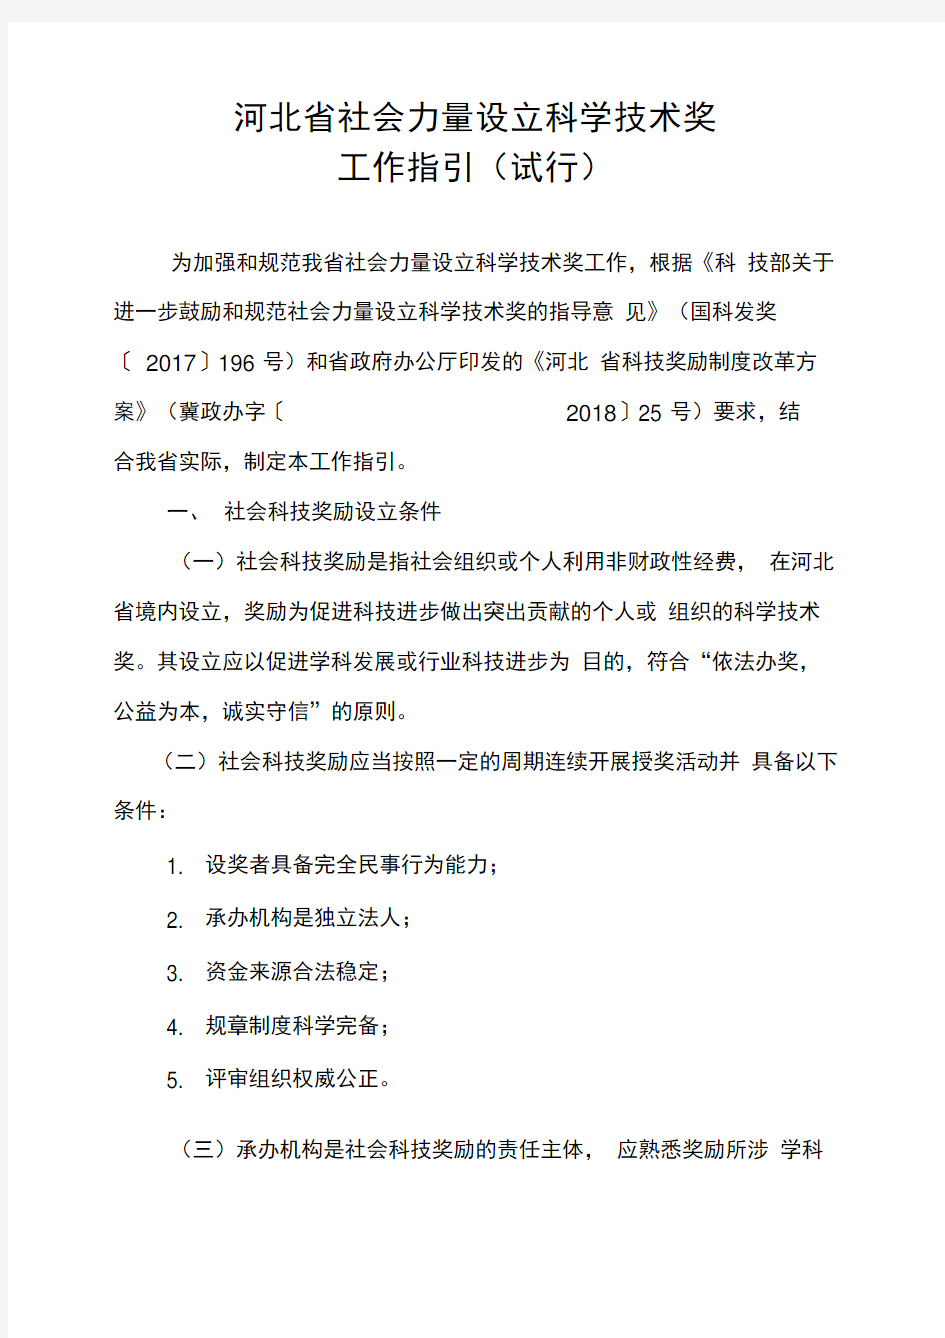 河北省社会力量设立科学技术奖工作指引(试行)